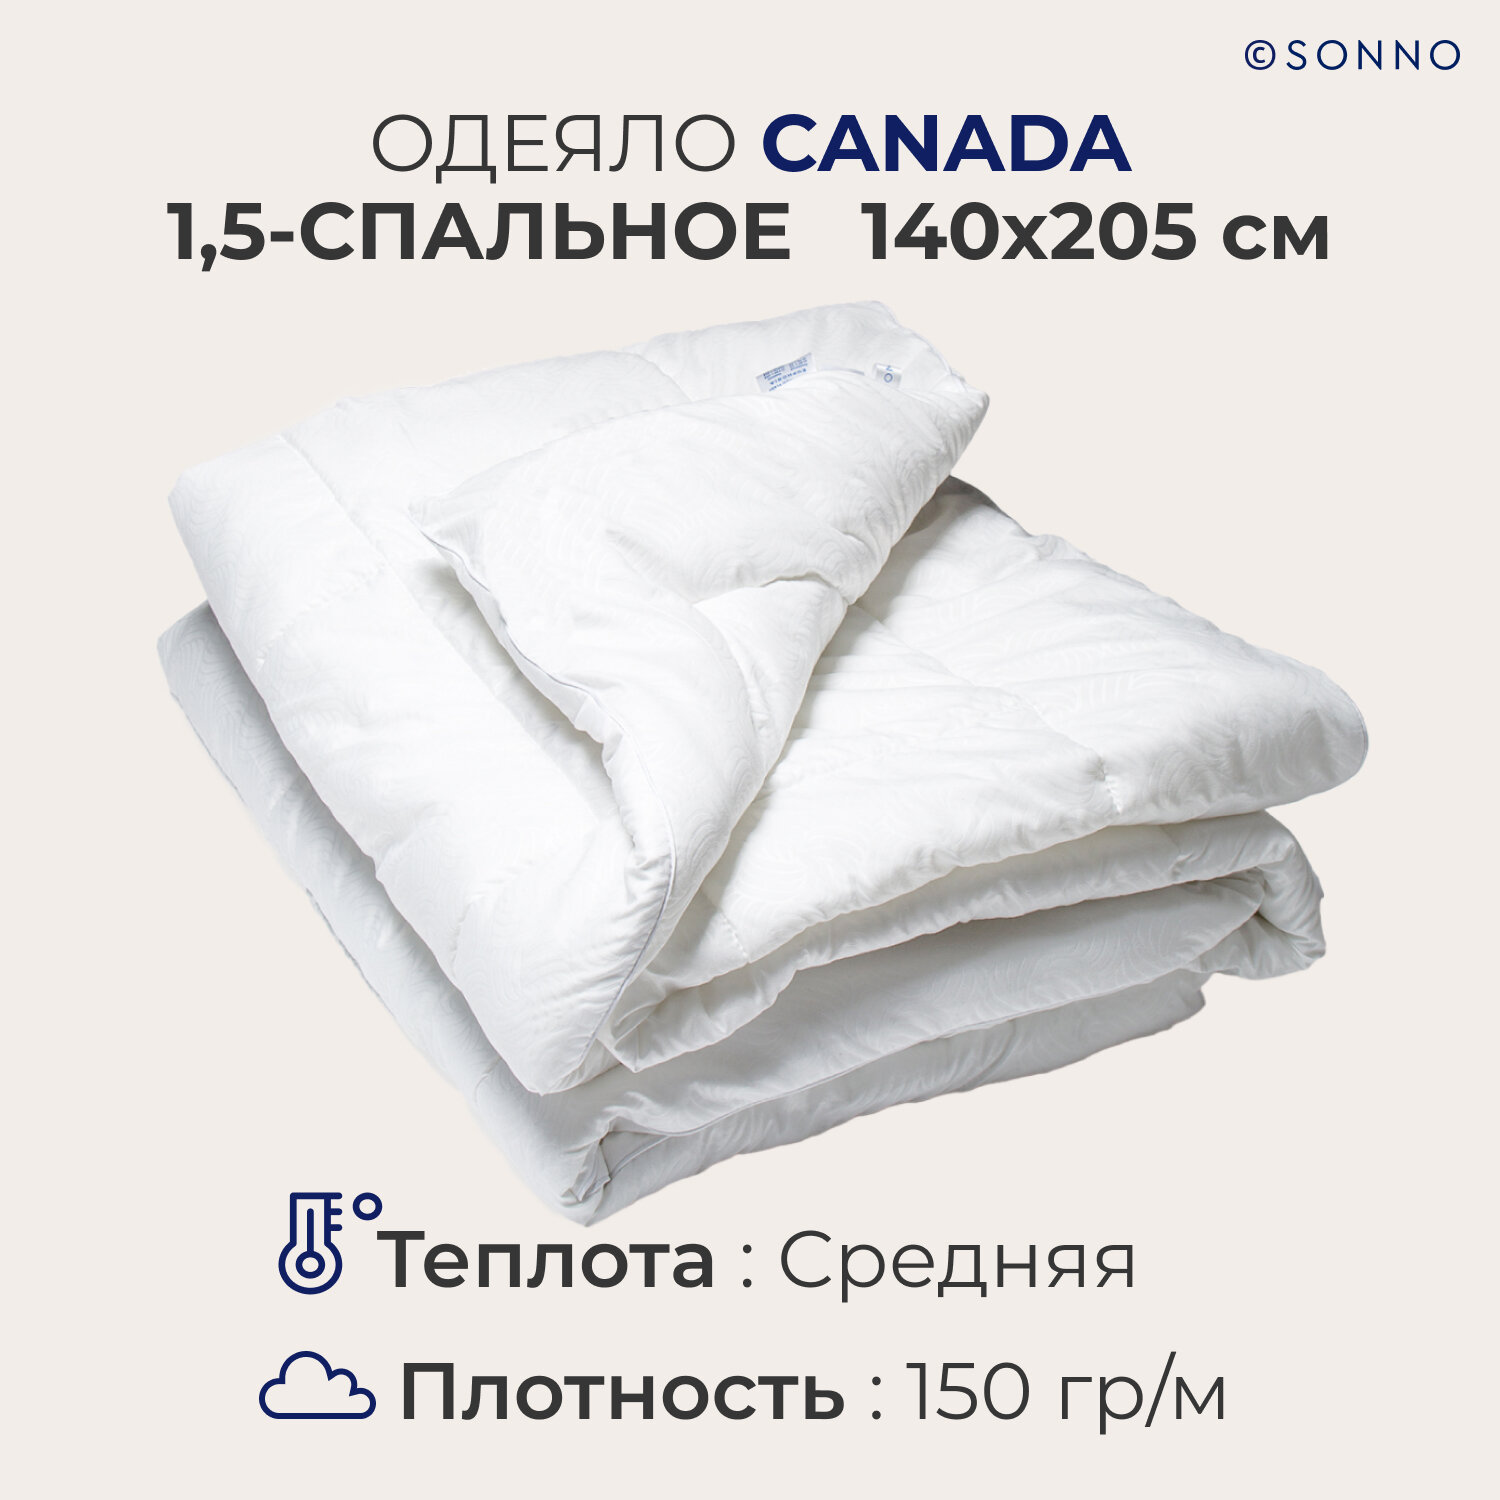 Одеяло SONNO CANADA, 1,5-спальное, стеганое, гипоаллергенное, всесезонное, 140х205 см